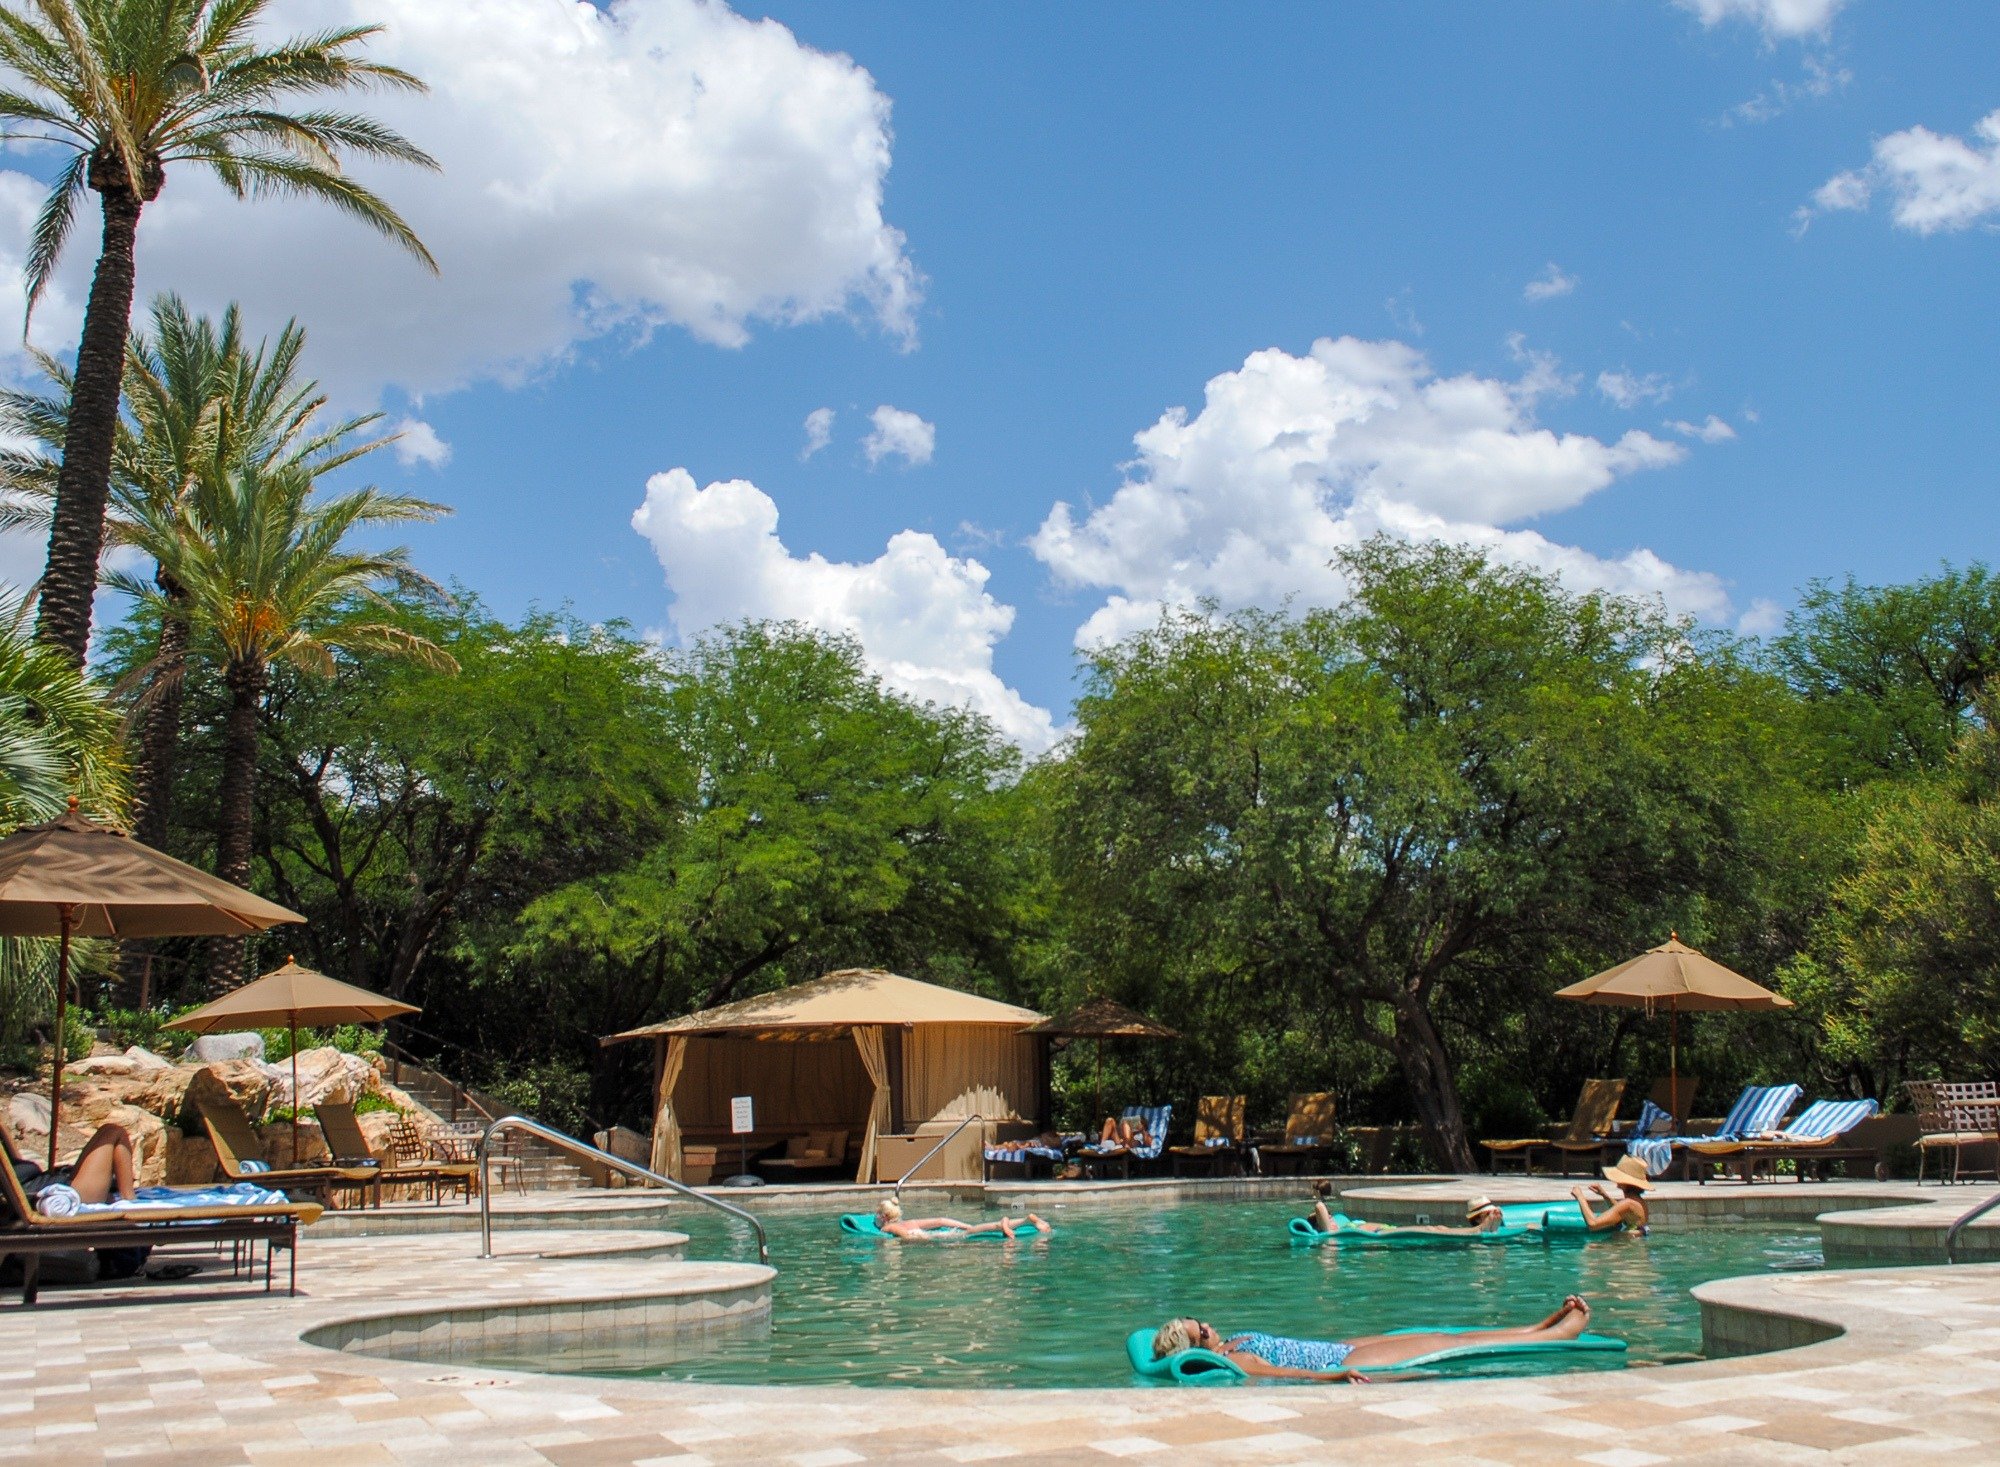 Swimming pool at Miraval Resort